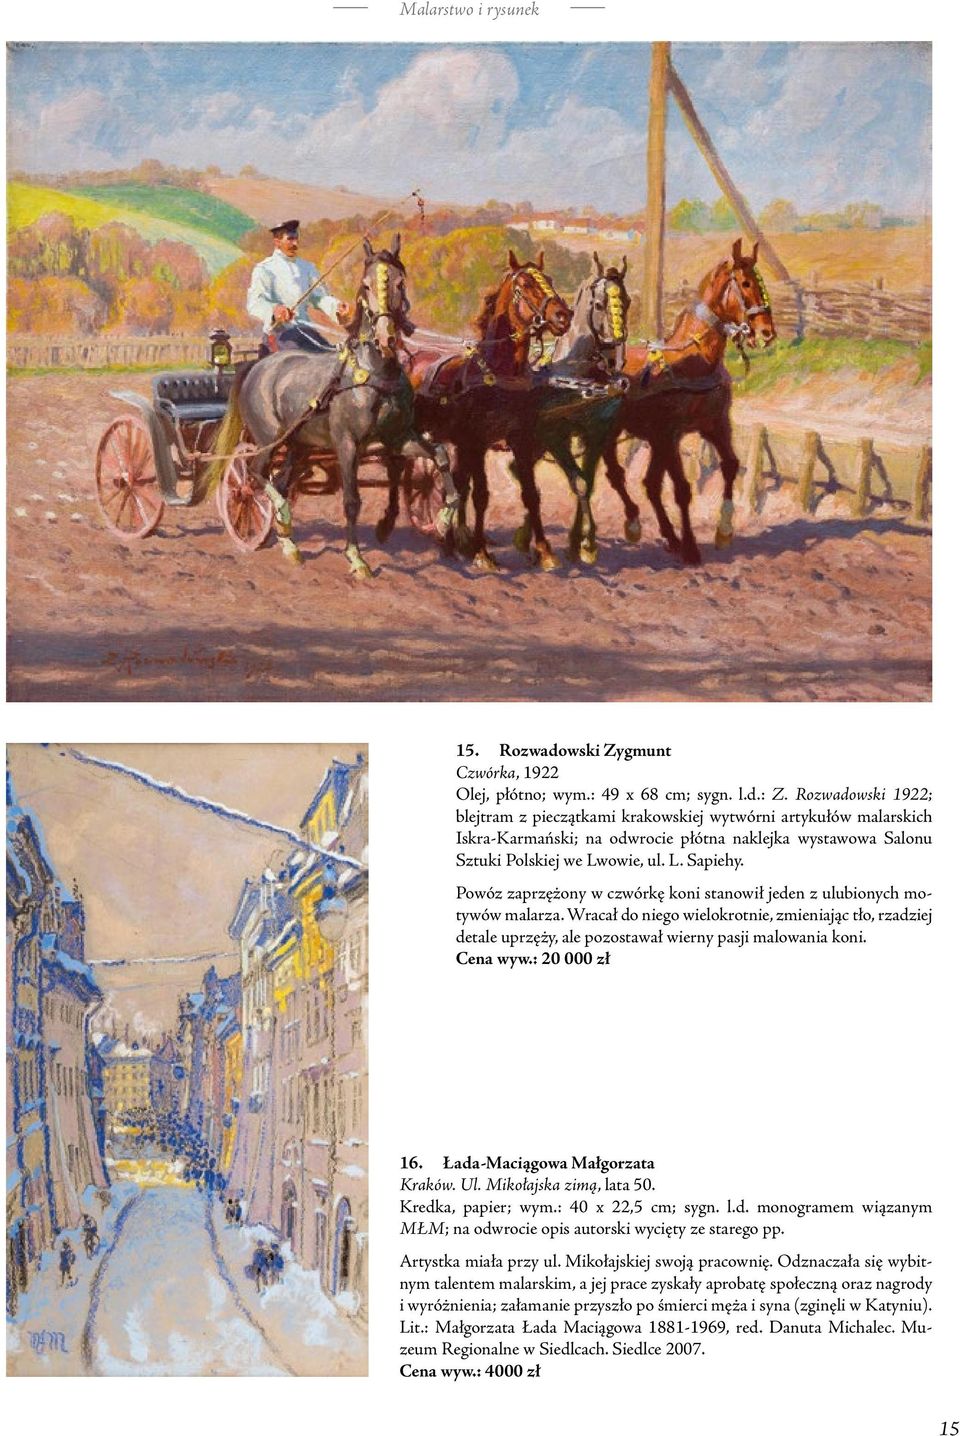 Powóz zaprzężony w czwórkę koni stanowił jeden z ulubionych motywów malarza. Wracał do niego wielokrotnie, zmieniając tło, rzadziej detale uprzęży, ale pozostawał wierny pasji malowania koni.